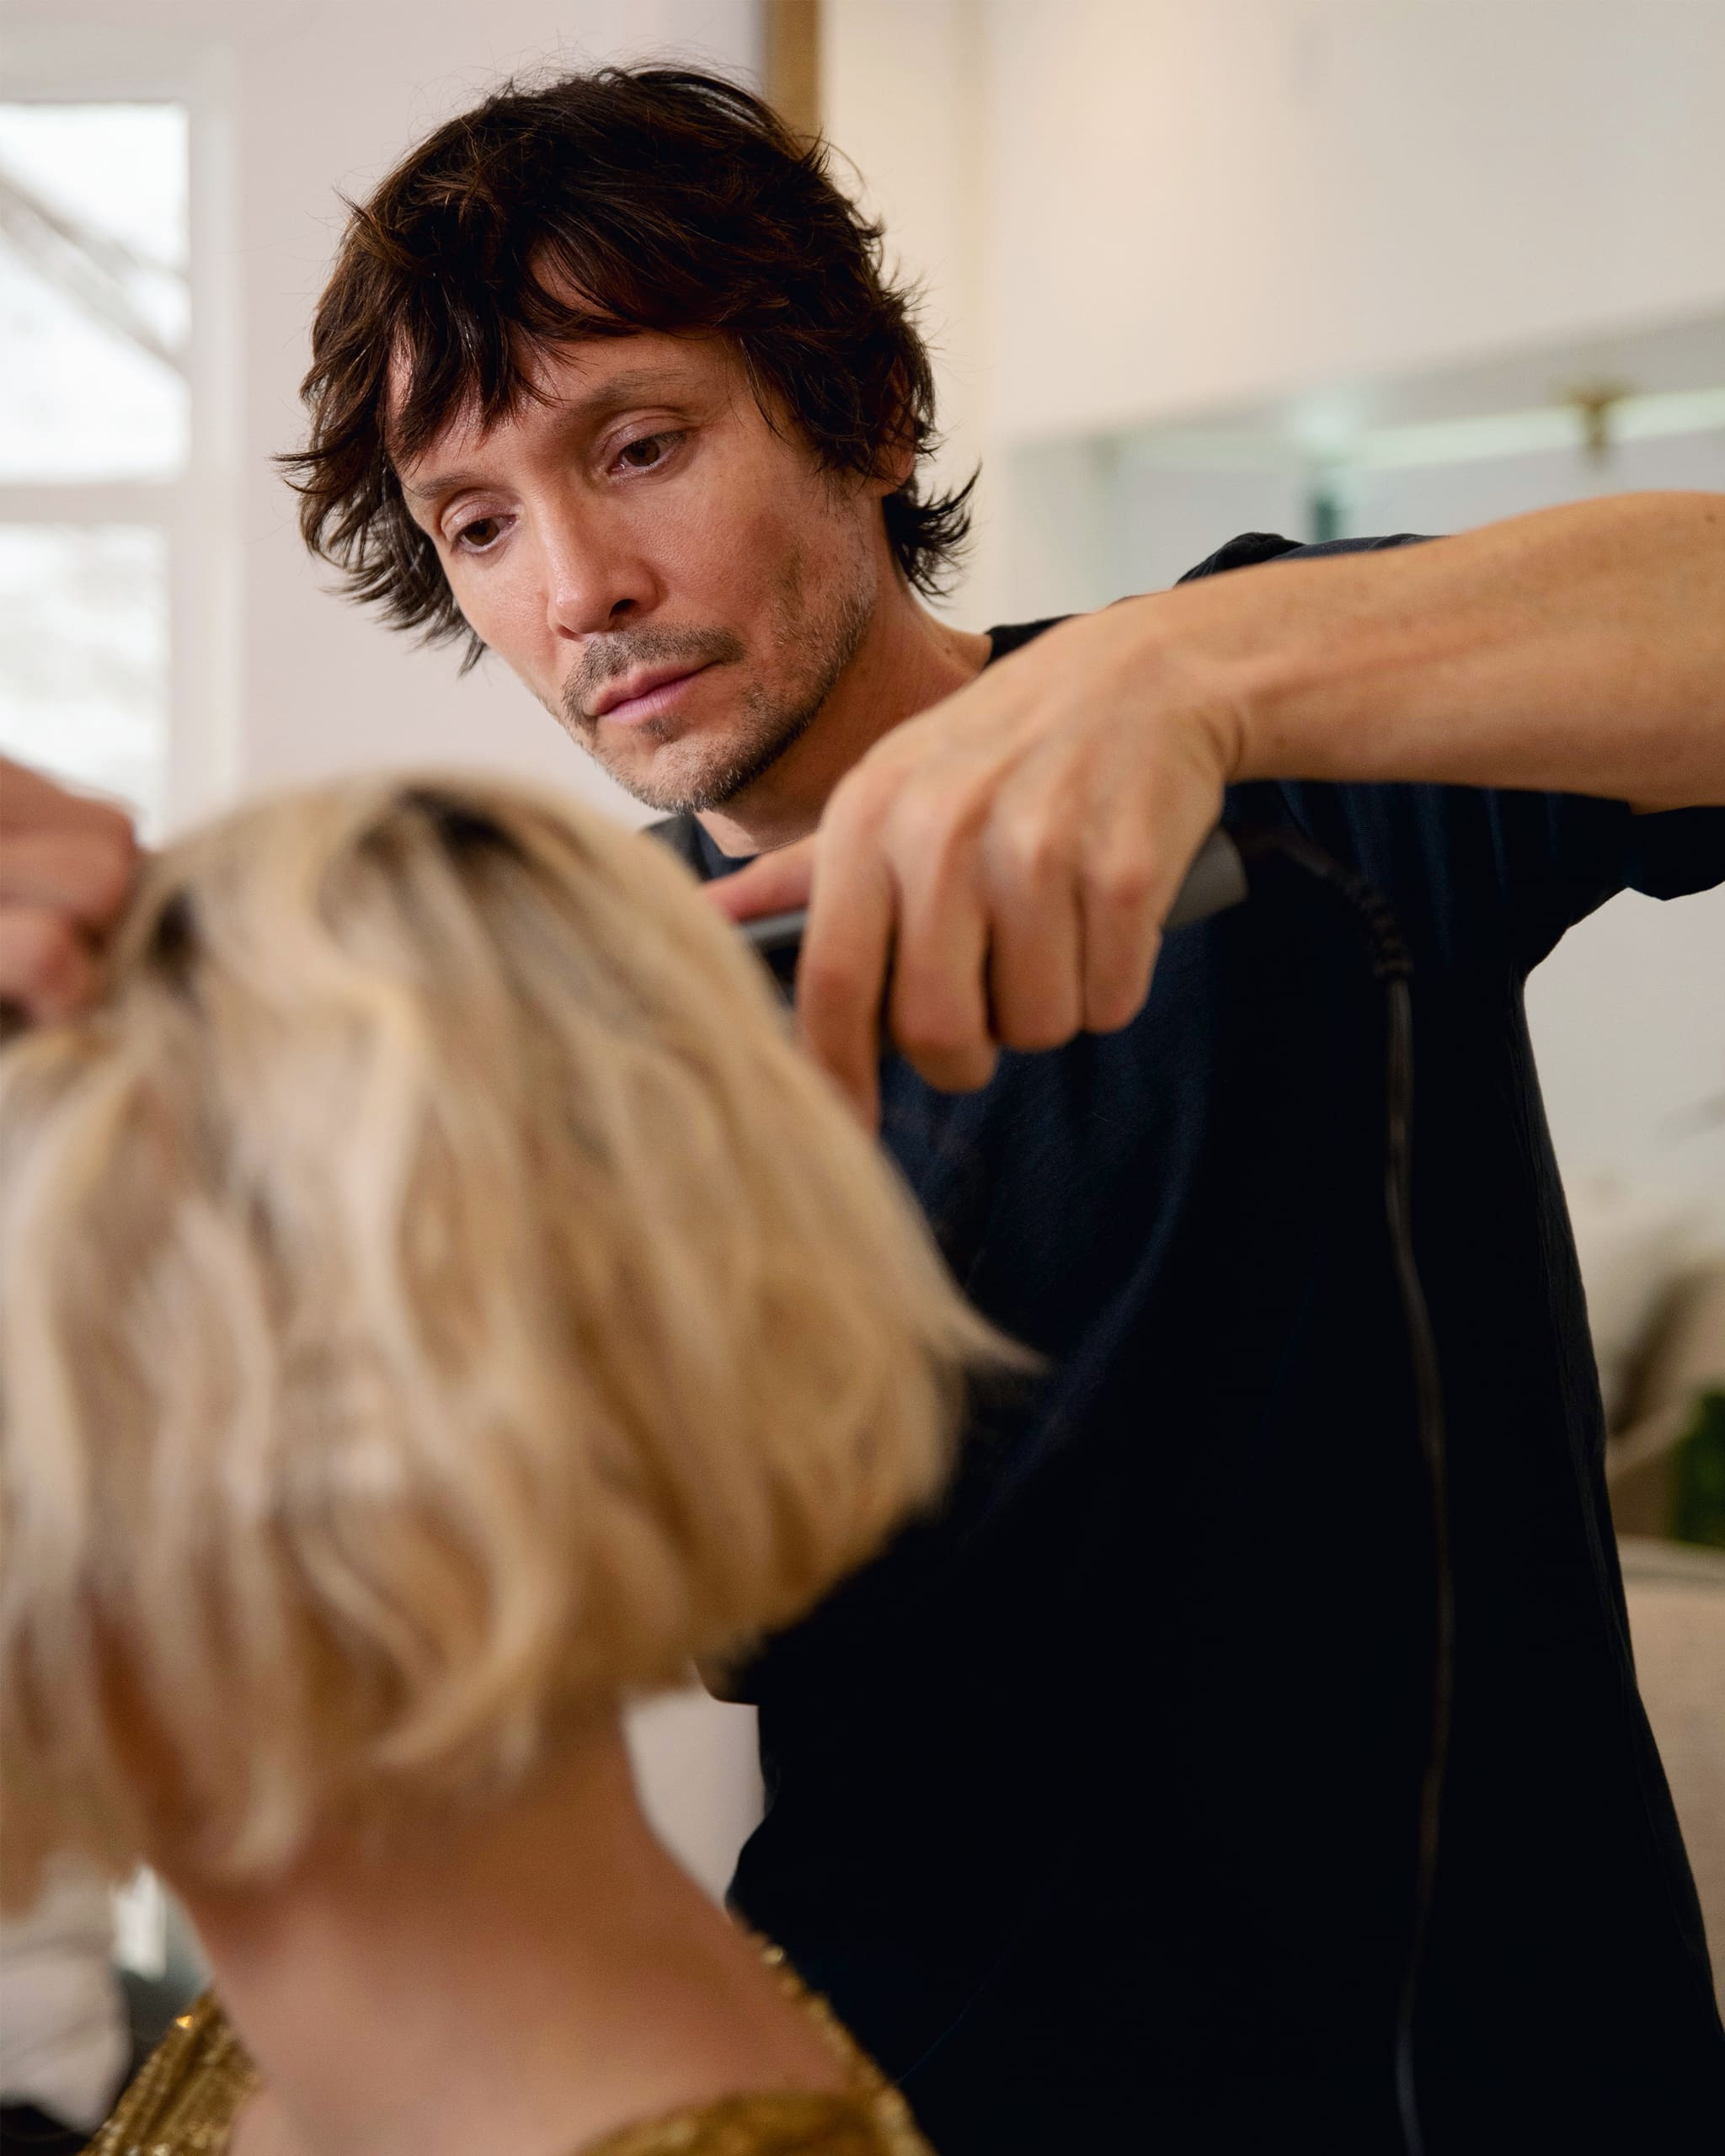 Ken Pavés cuts client’s blonde hair.